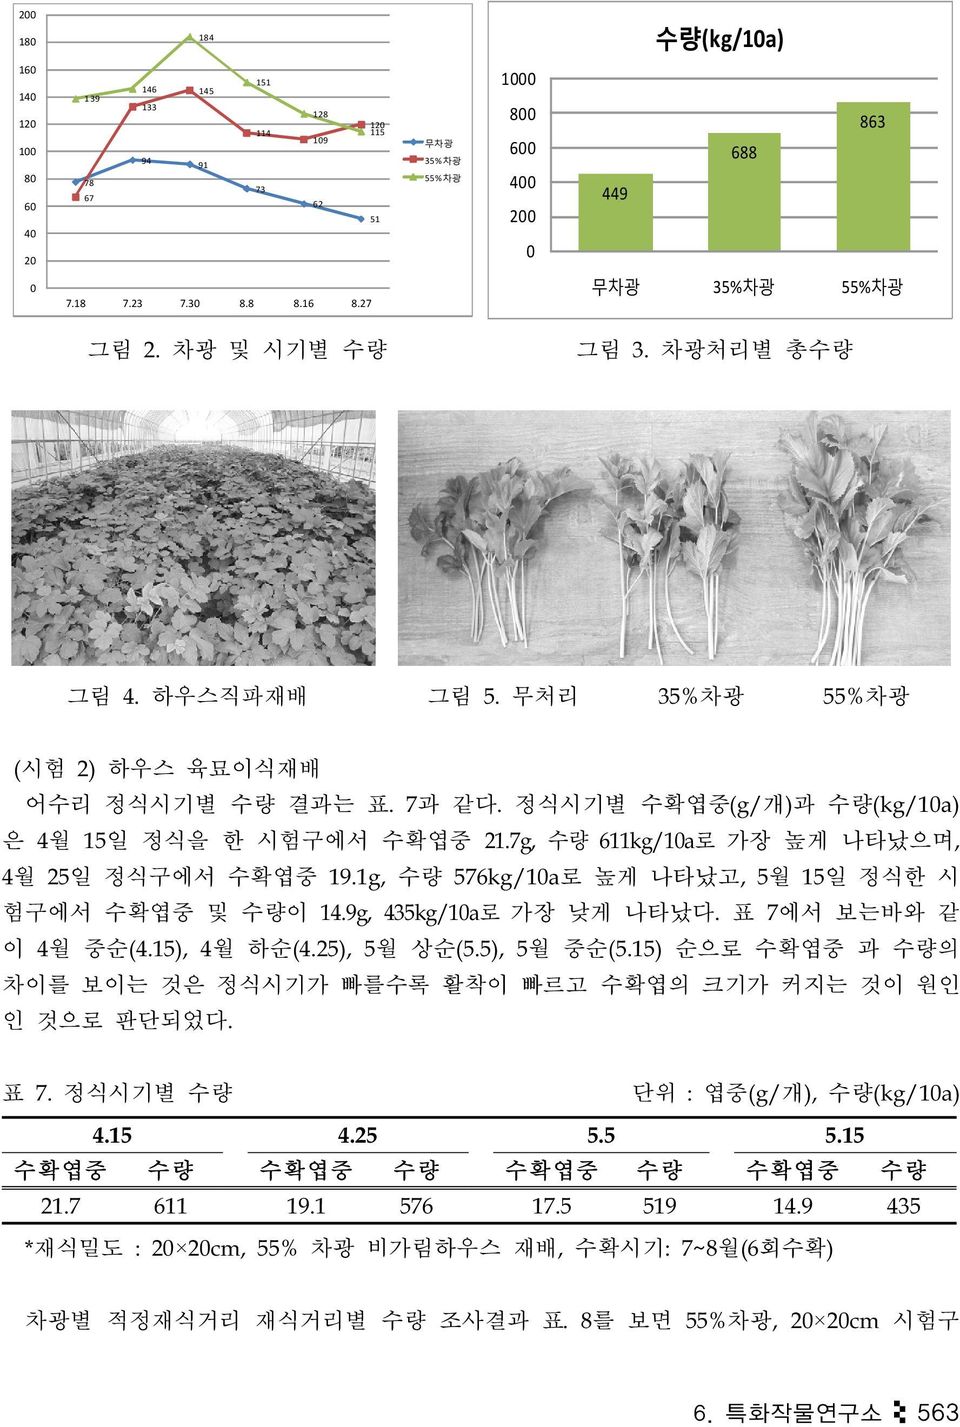 정식시기별 수확엽중(g/개)과 수량(kg/10a) 은 4월 15일 정식을 한 시험구에서 수확엽중 21.7g, 수량 611kg/10a로 가장 높게 나타났으며, 4월 25일 정식구에서 수확엽중 19.1g, 수량 576kg/10a로 높게 나타났고, 5월 15일 정식한 시 험구에서 수확엽중 및 수량이 14.9g, 435kg/10a로 가장 낮게 나타났다.